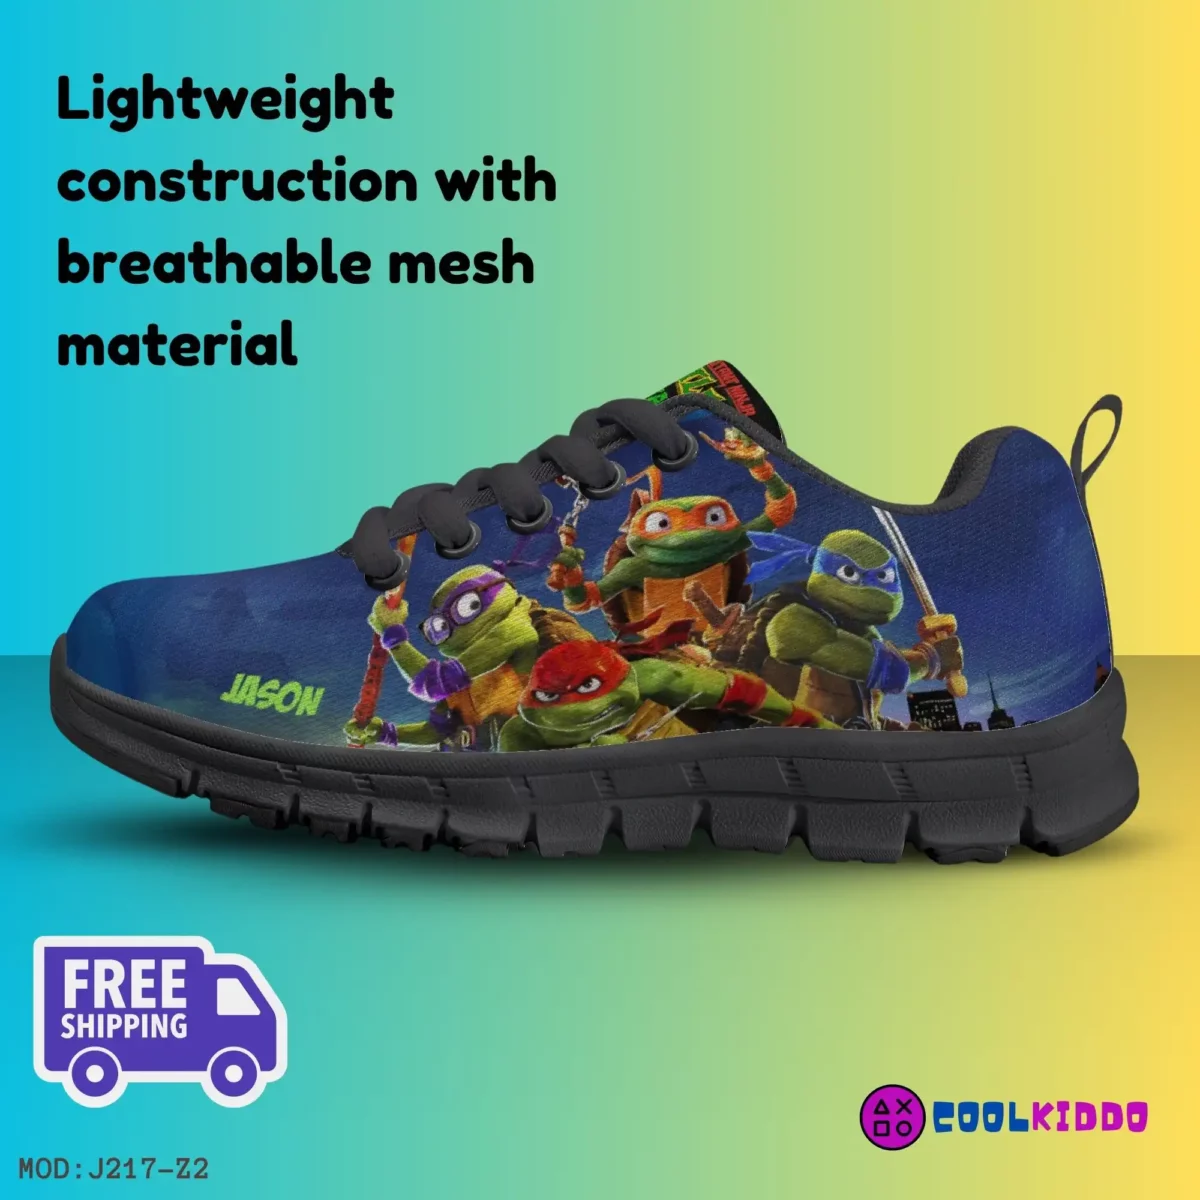 Personalized Teenage Mutant Ninja Turtles Inspired Kids’ Lightweight Mesh Sneakers Cool Kiddo 20